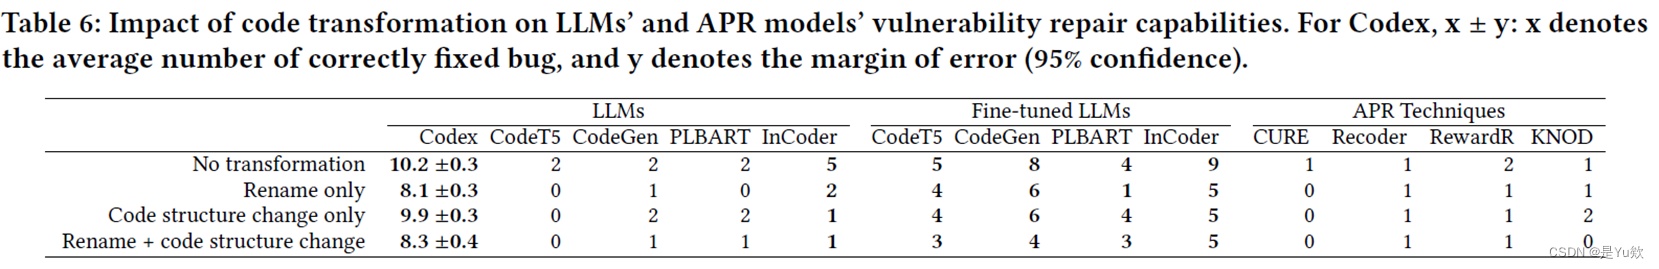 【网安大模型专题10.19】论文6：Java漏洞自动修复+数据集 VJBench+大语言模型、APR技术+代码转换方法+LLM和DL-APR模型的挑战与机会